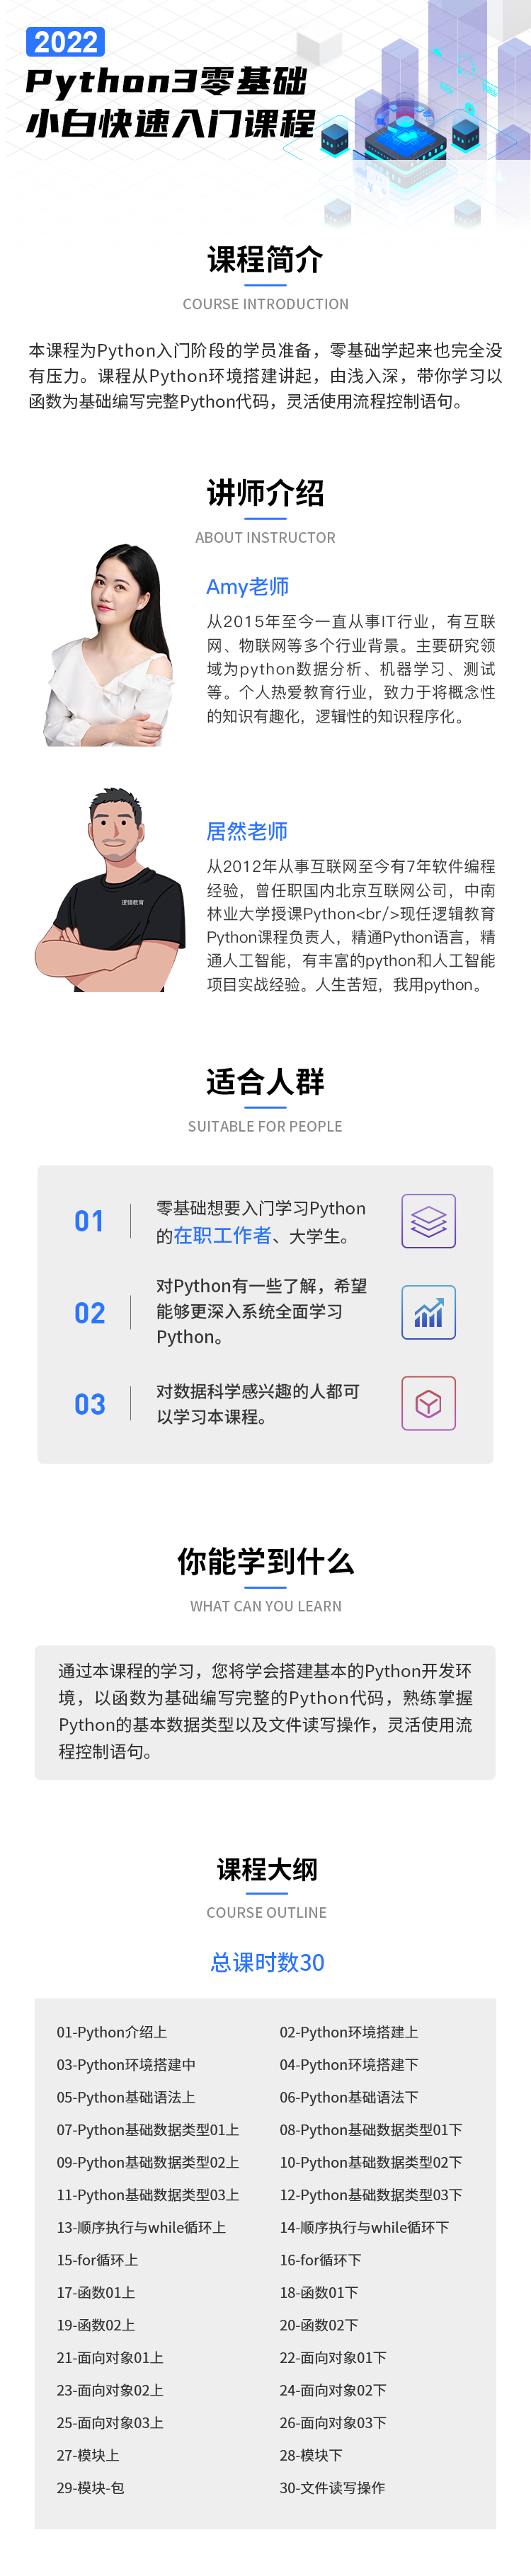 2022年Python.png